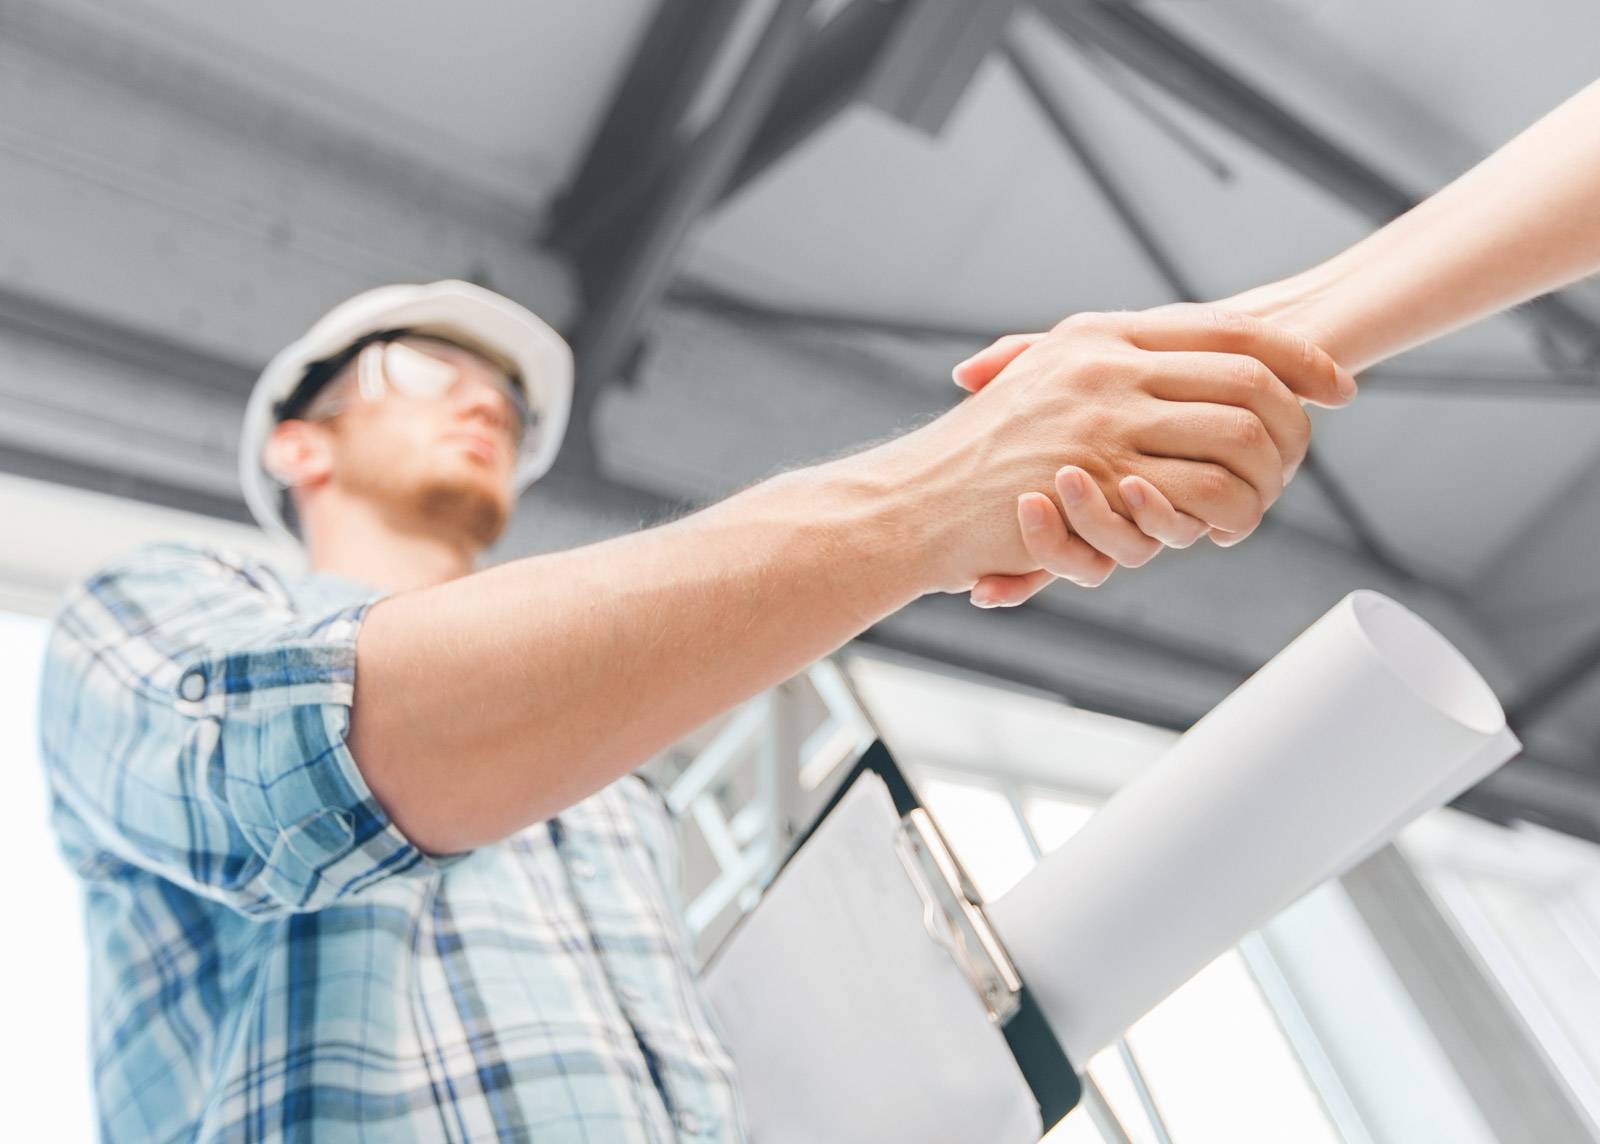 10 советов как не дать себя обмануть строителям при покупке стройматериалов